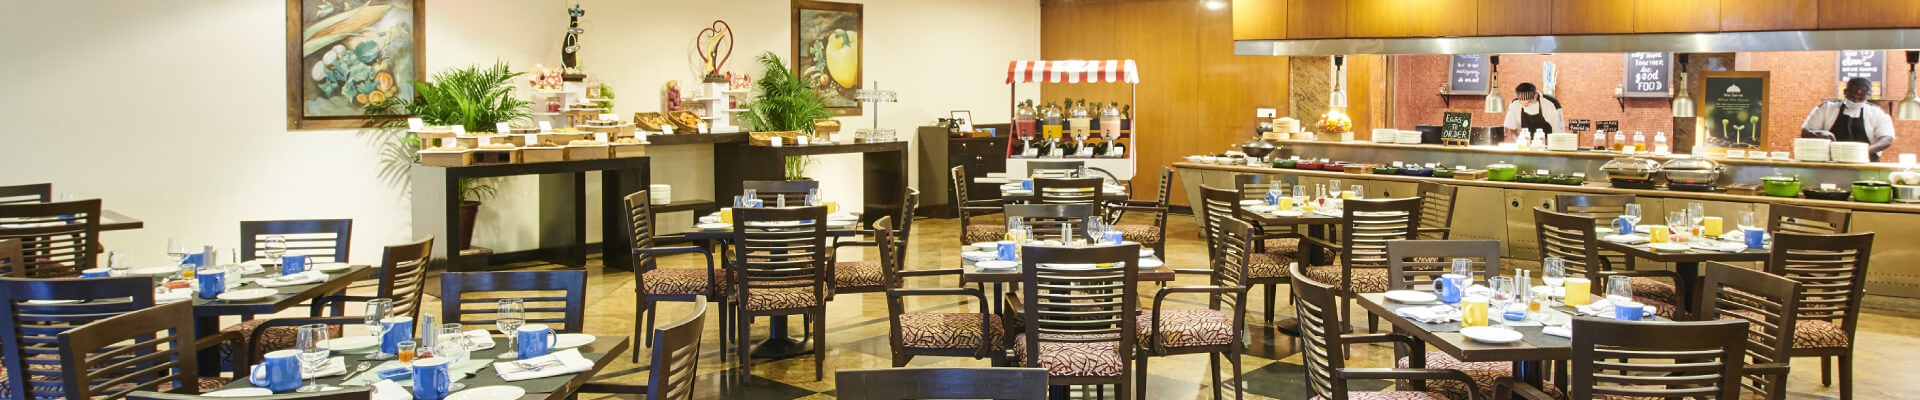 Best Luxury Restaurants in Bangalore - The LaLiT Ashok Bangalore